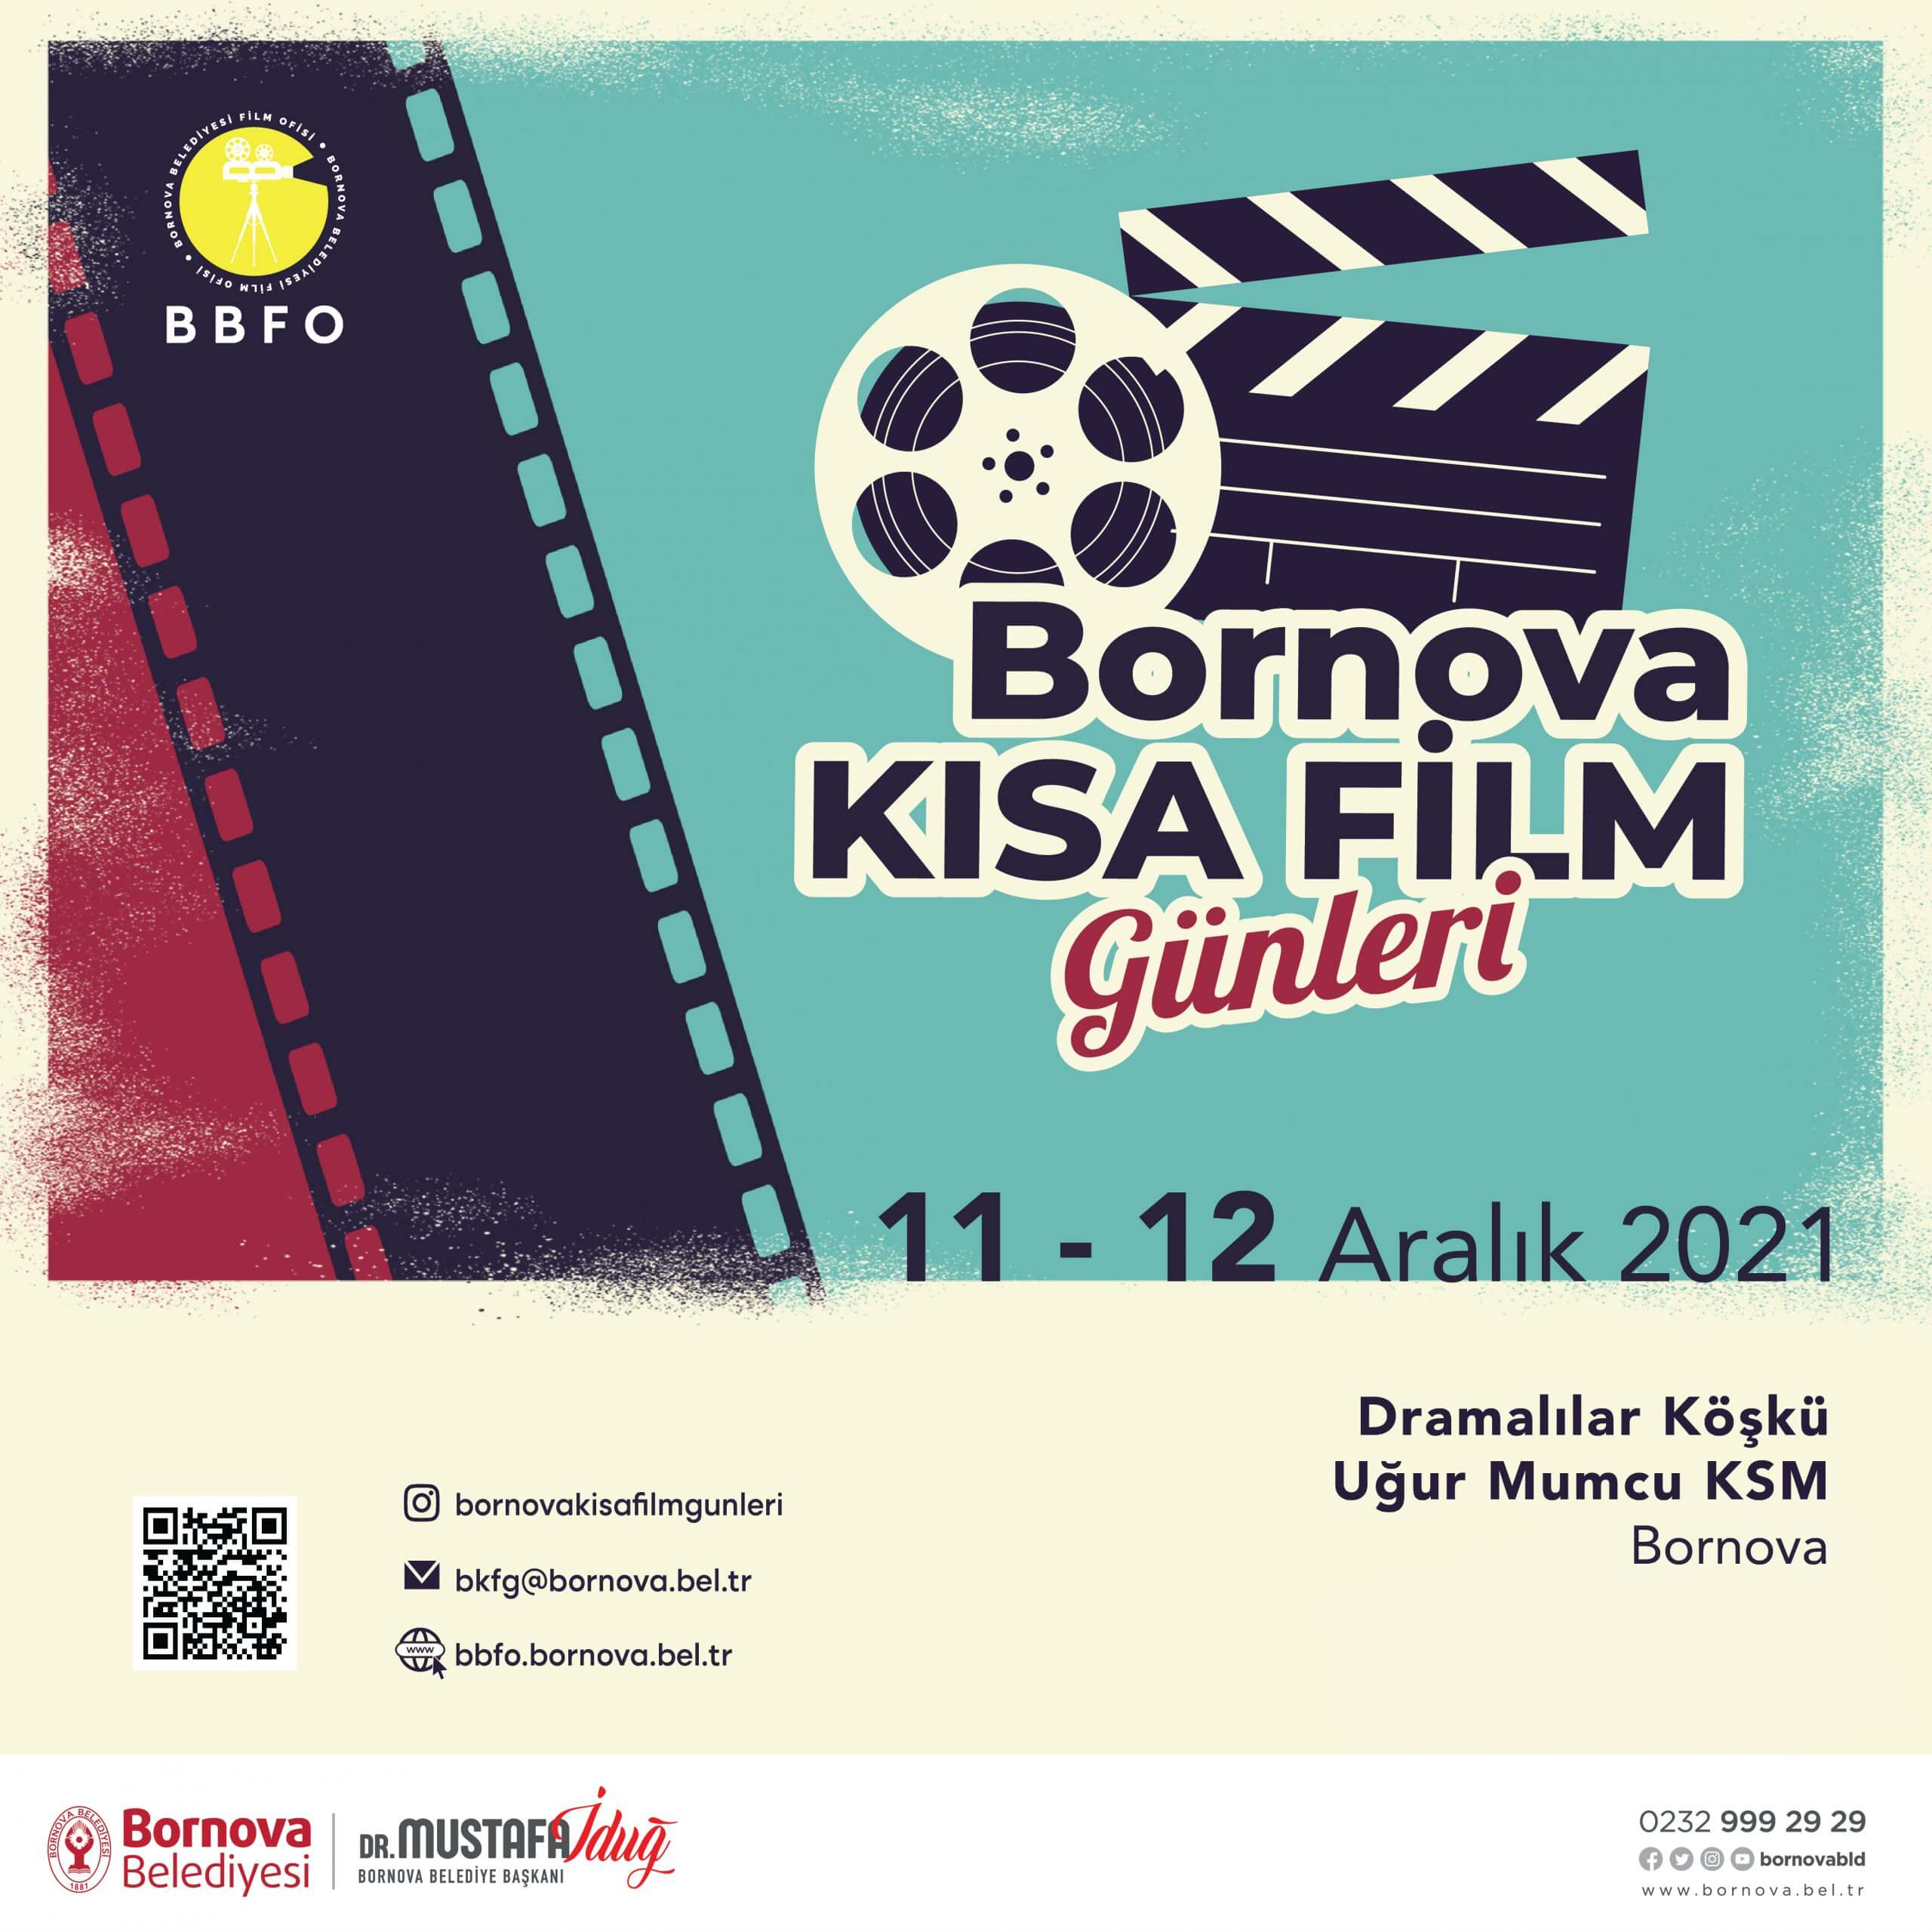 Sinema ile ilgilenen vatandaşları ve gençleri kısa filmlerin yapımına özendirmek, gösterimini sağlamak ve ülke sinemasına katkıda bulunmak amacıyla yola çıkan etkinlik 11-12 Aralık 2021 tarihlerinde yapılacak. Gösterim programında hem 2020-2021 yıllarında Bornova Belediyesi Film Ofisi tarafından ekipman ve proje danışmanlığı desteği verilmiş kısa filmler, hem de ulusal ve uluslararası film festivallerinde gösterimleri devam eden ödüllü kısa filmler yer alacak. Ayrıca program kapsamında filmlerin yönetmenleri ile fiziki söyleşiler de gerçekleştirilecek.